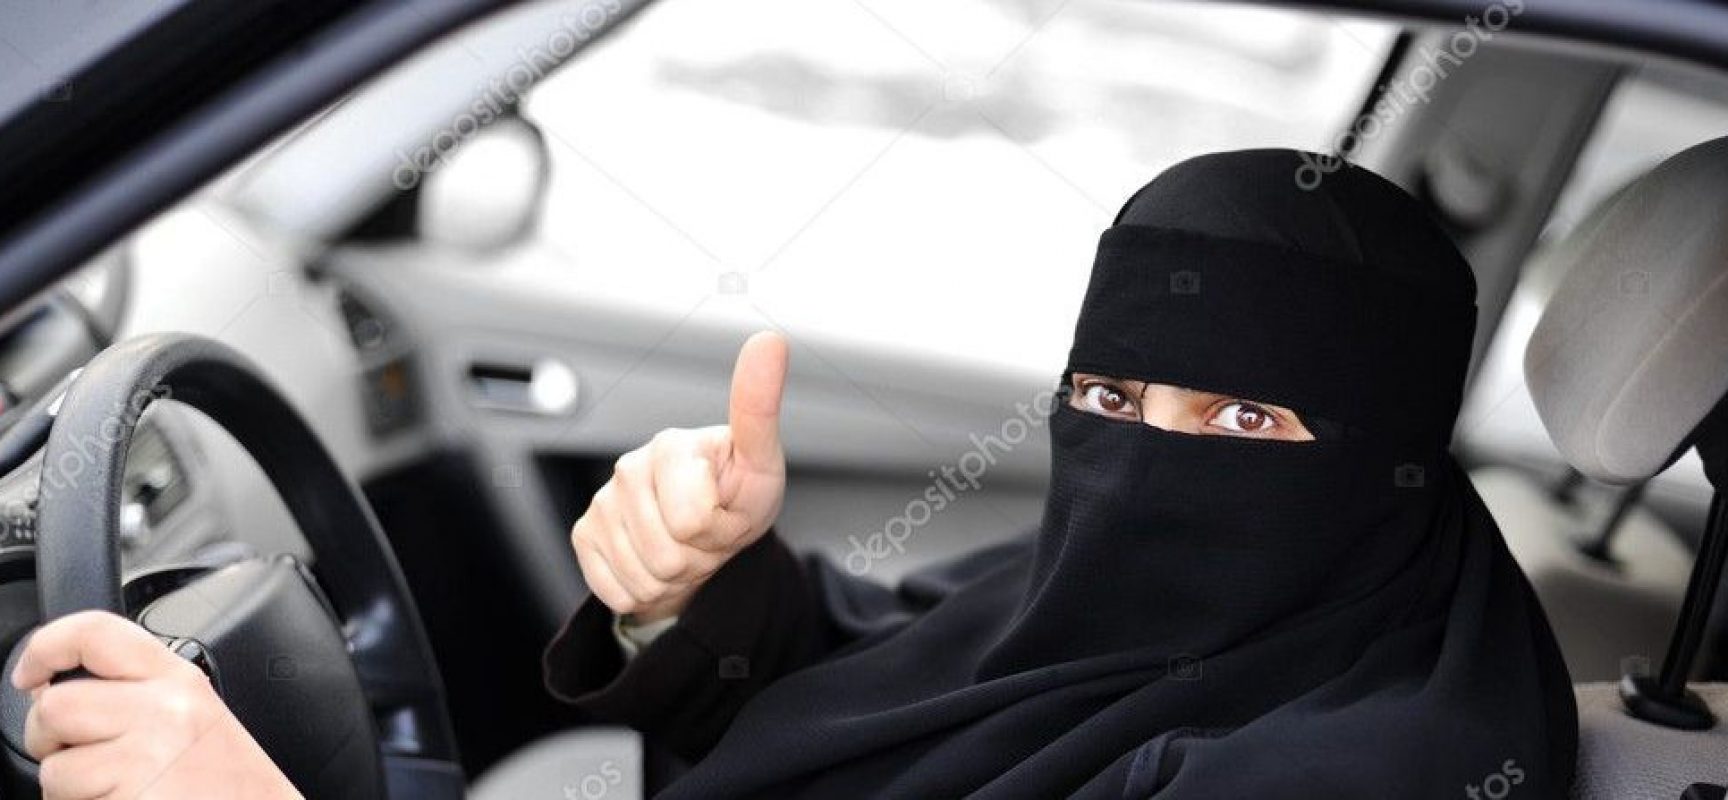 A partir de hoje, mulheres sauditas ganham direito de dirigir